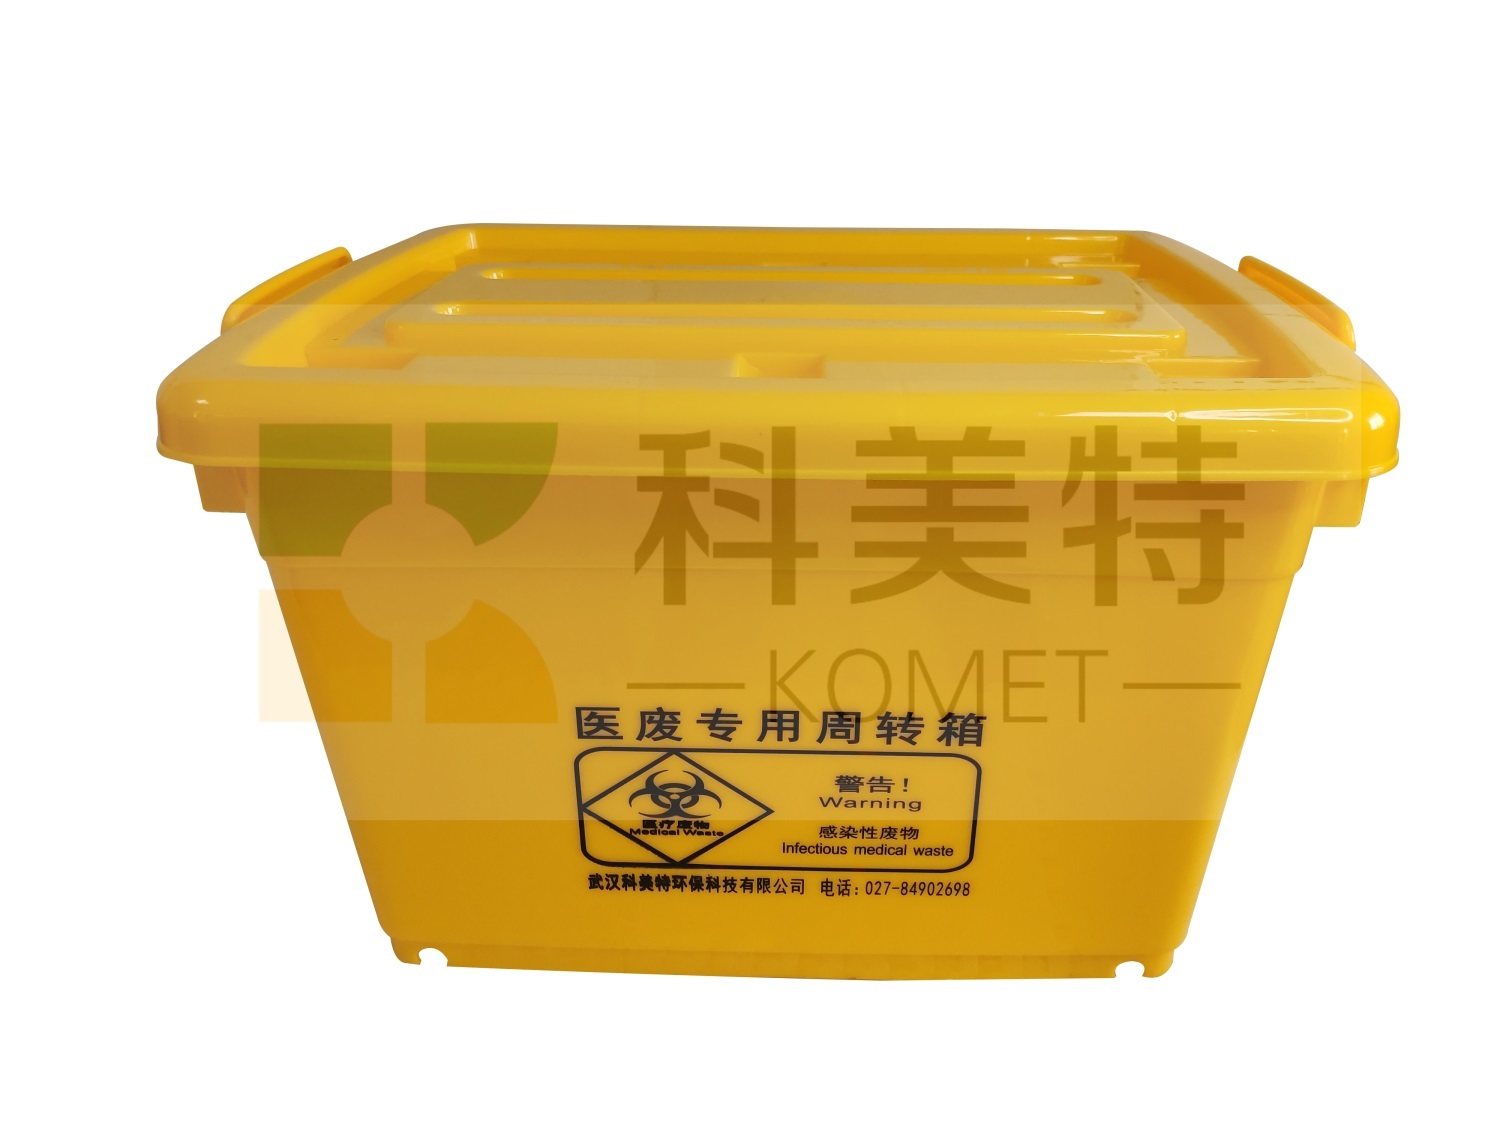 医疗废物处理设备与包装产品：武汉科美特为您提供一体化解决方案